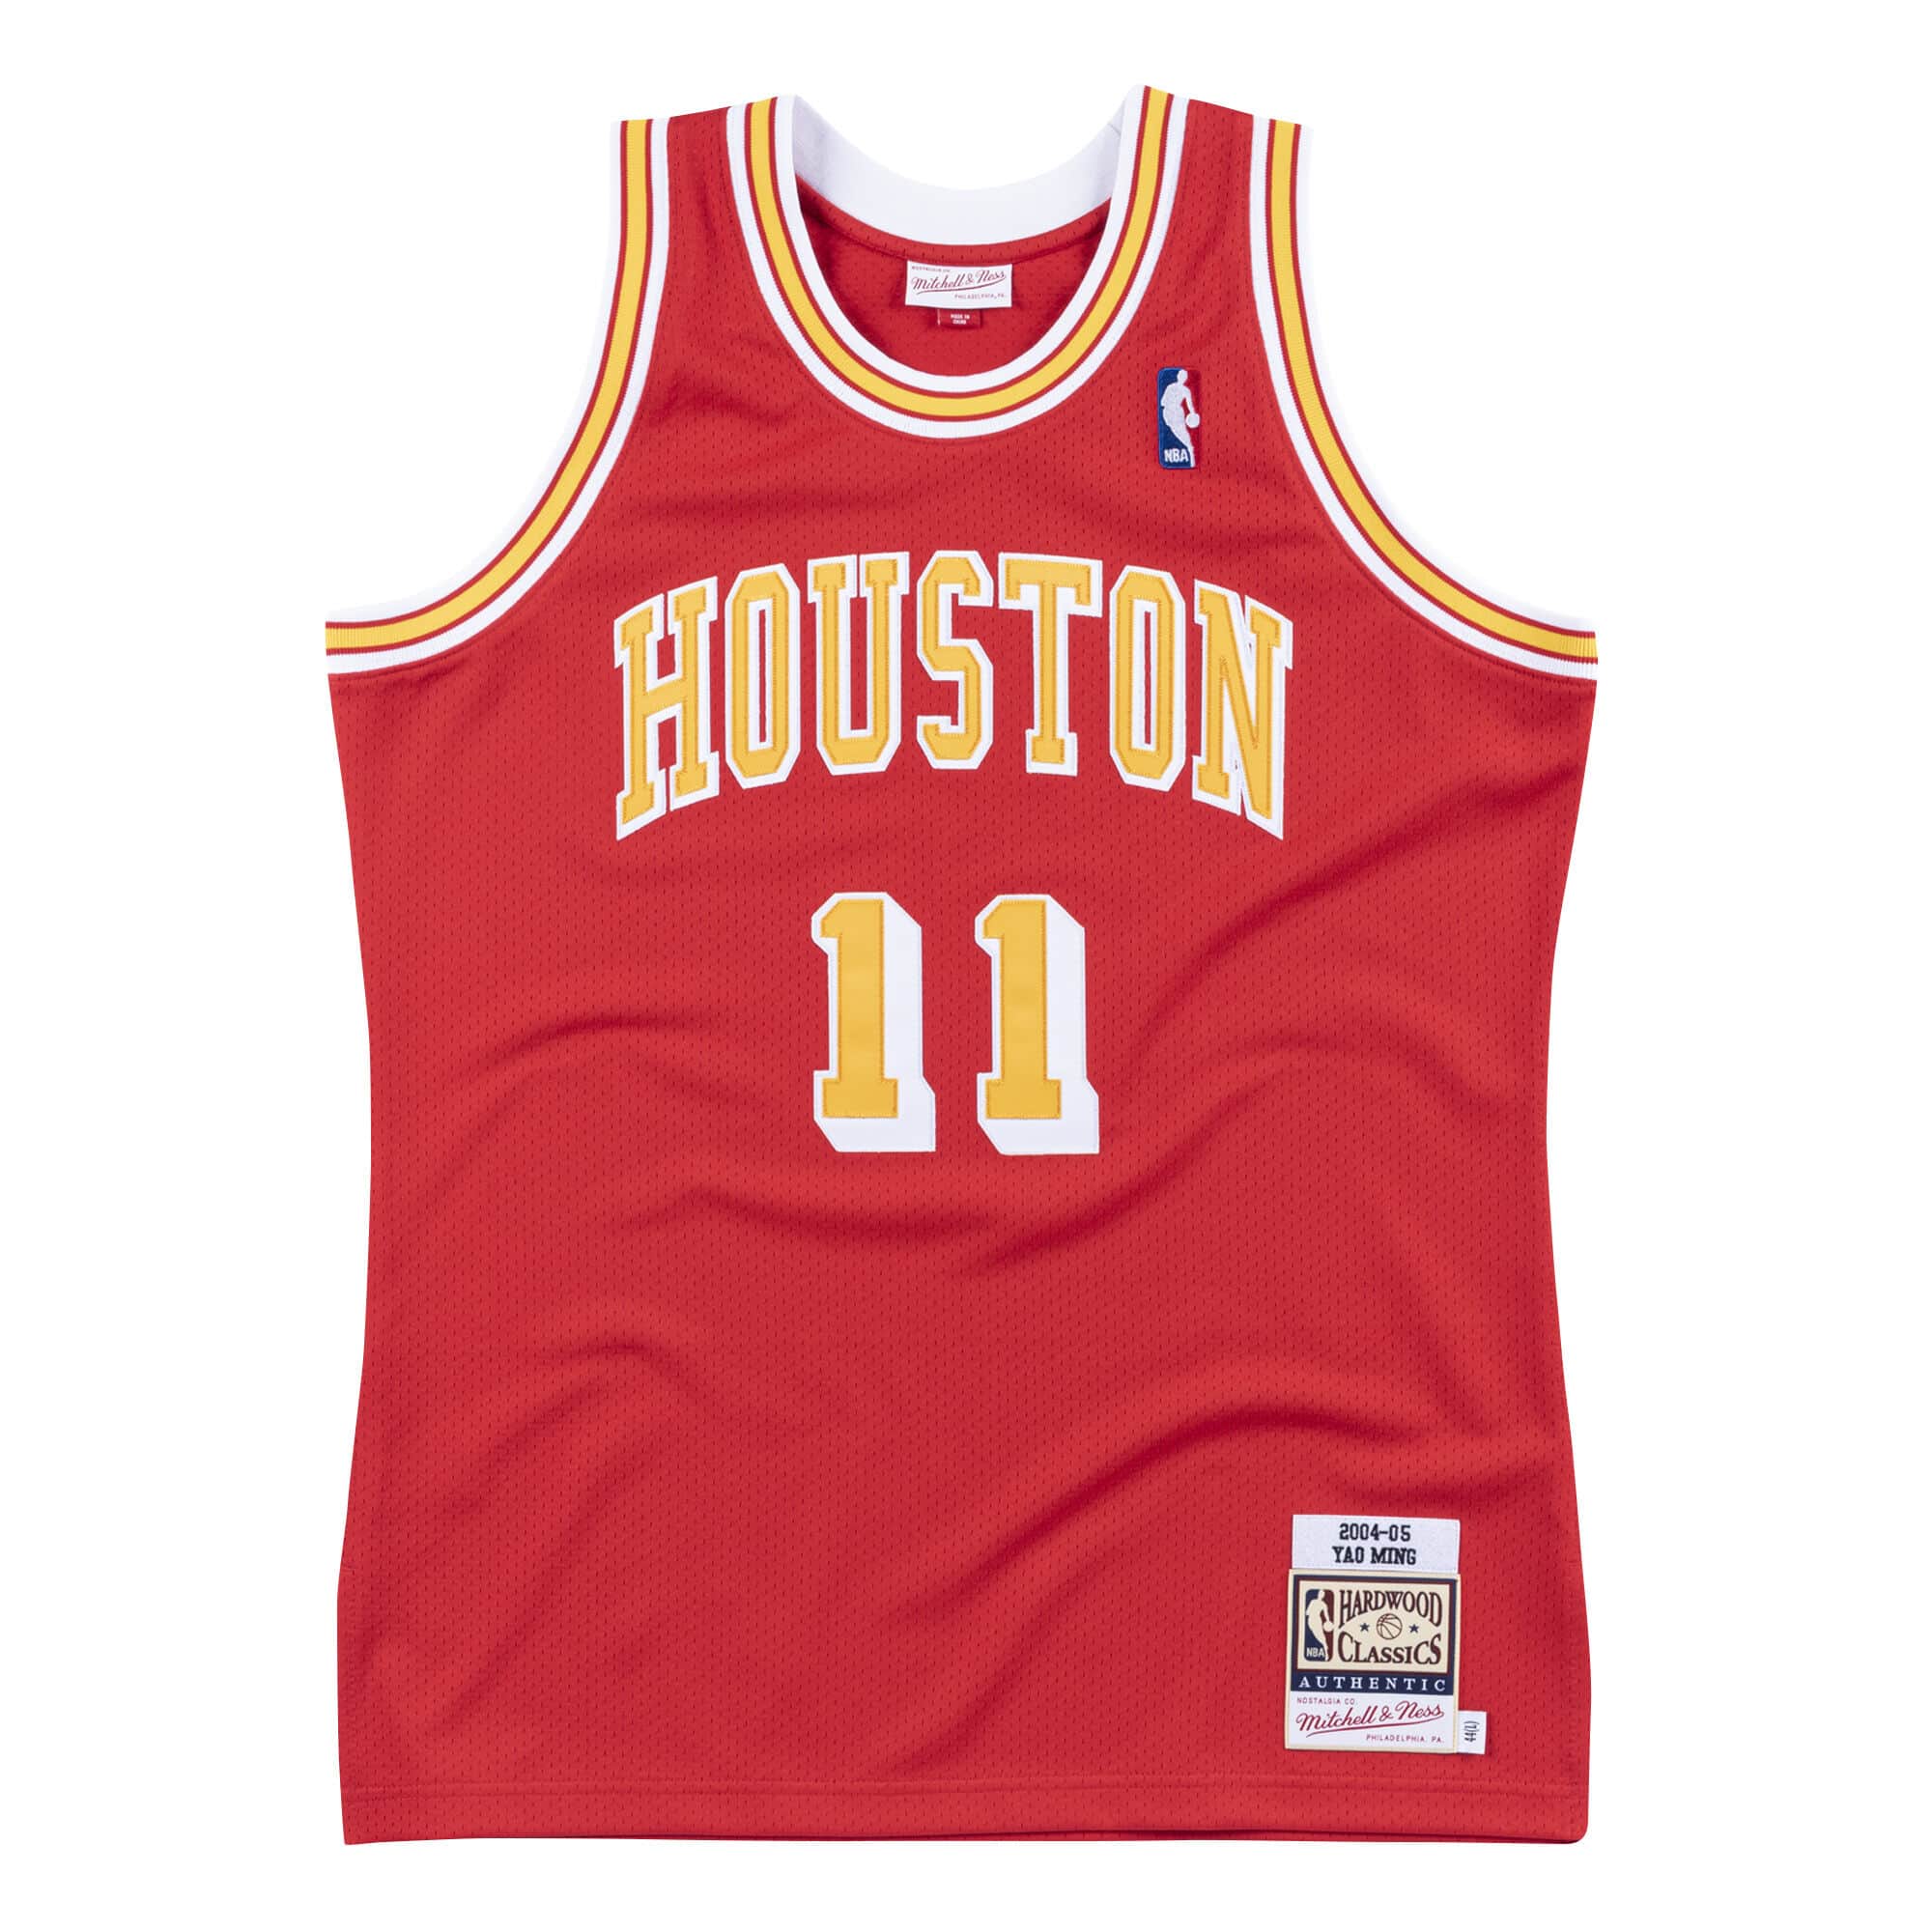 Jersey Houston Rockets 2004-05 Yao Ming